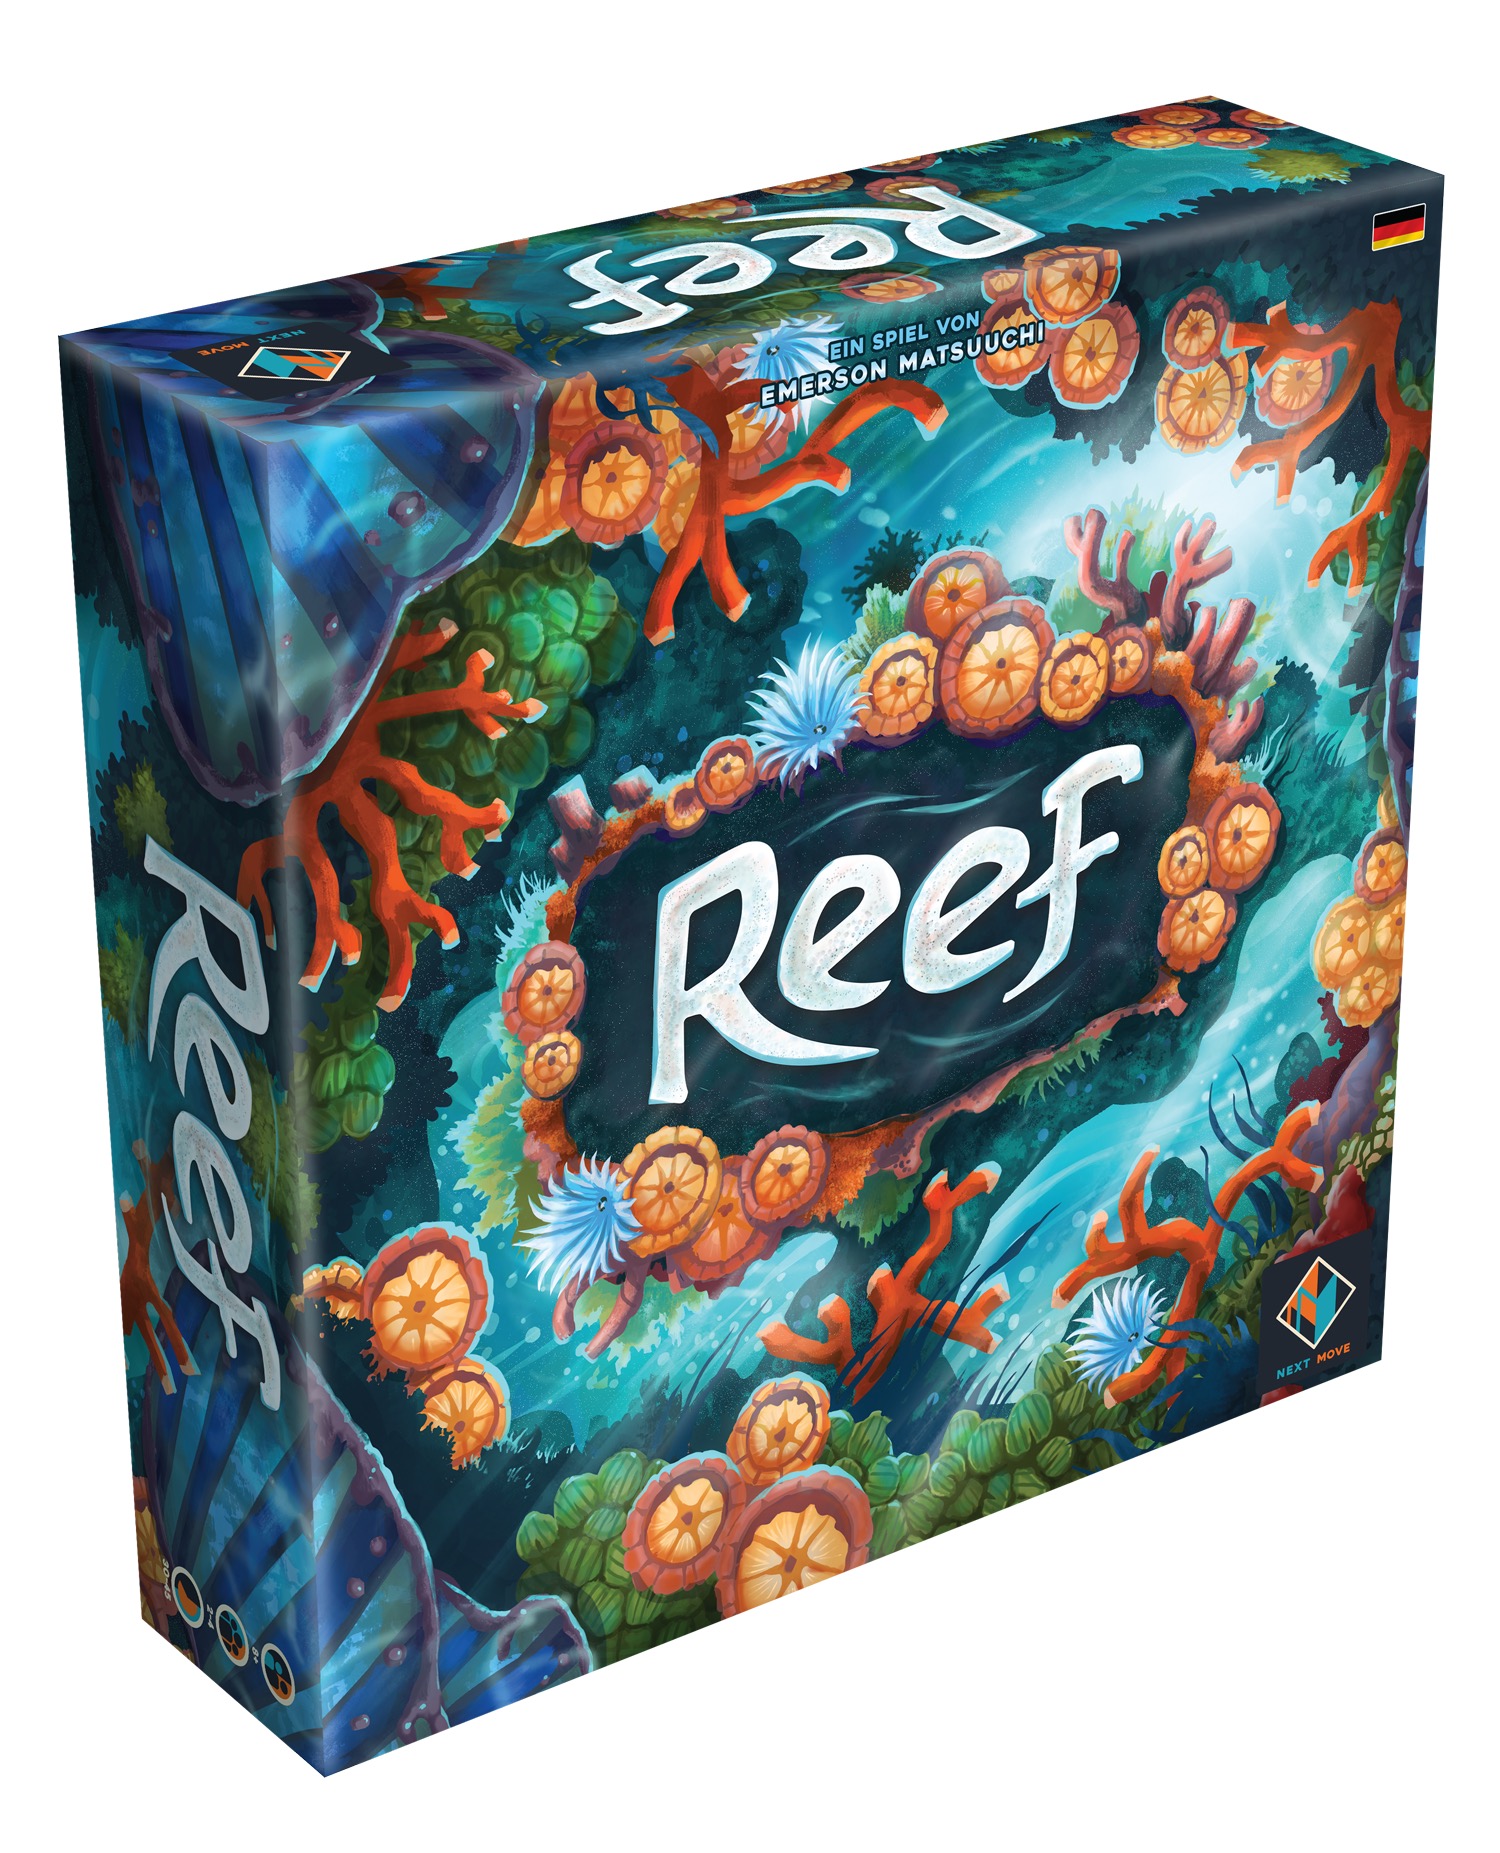 Reef von Next Move Games soll spätestens Anfang Oktober erscheinen